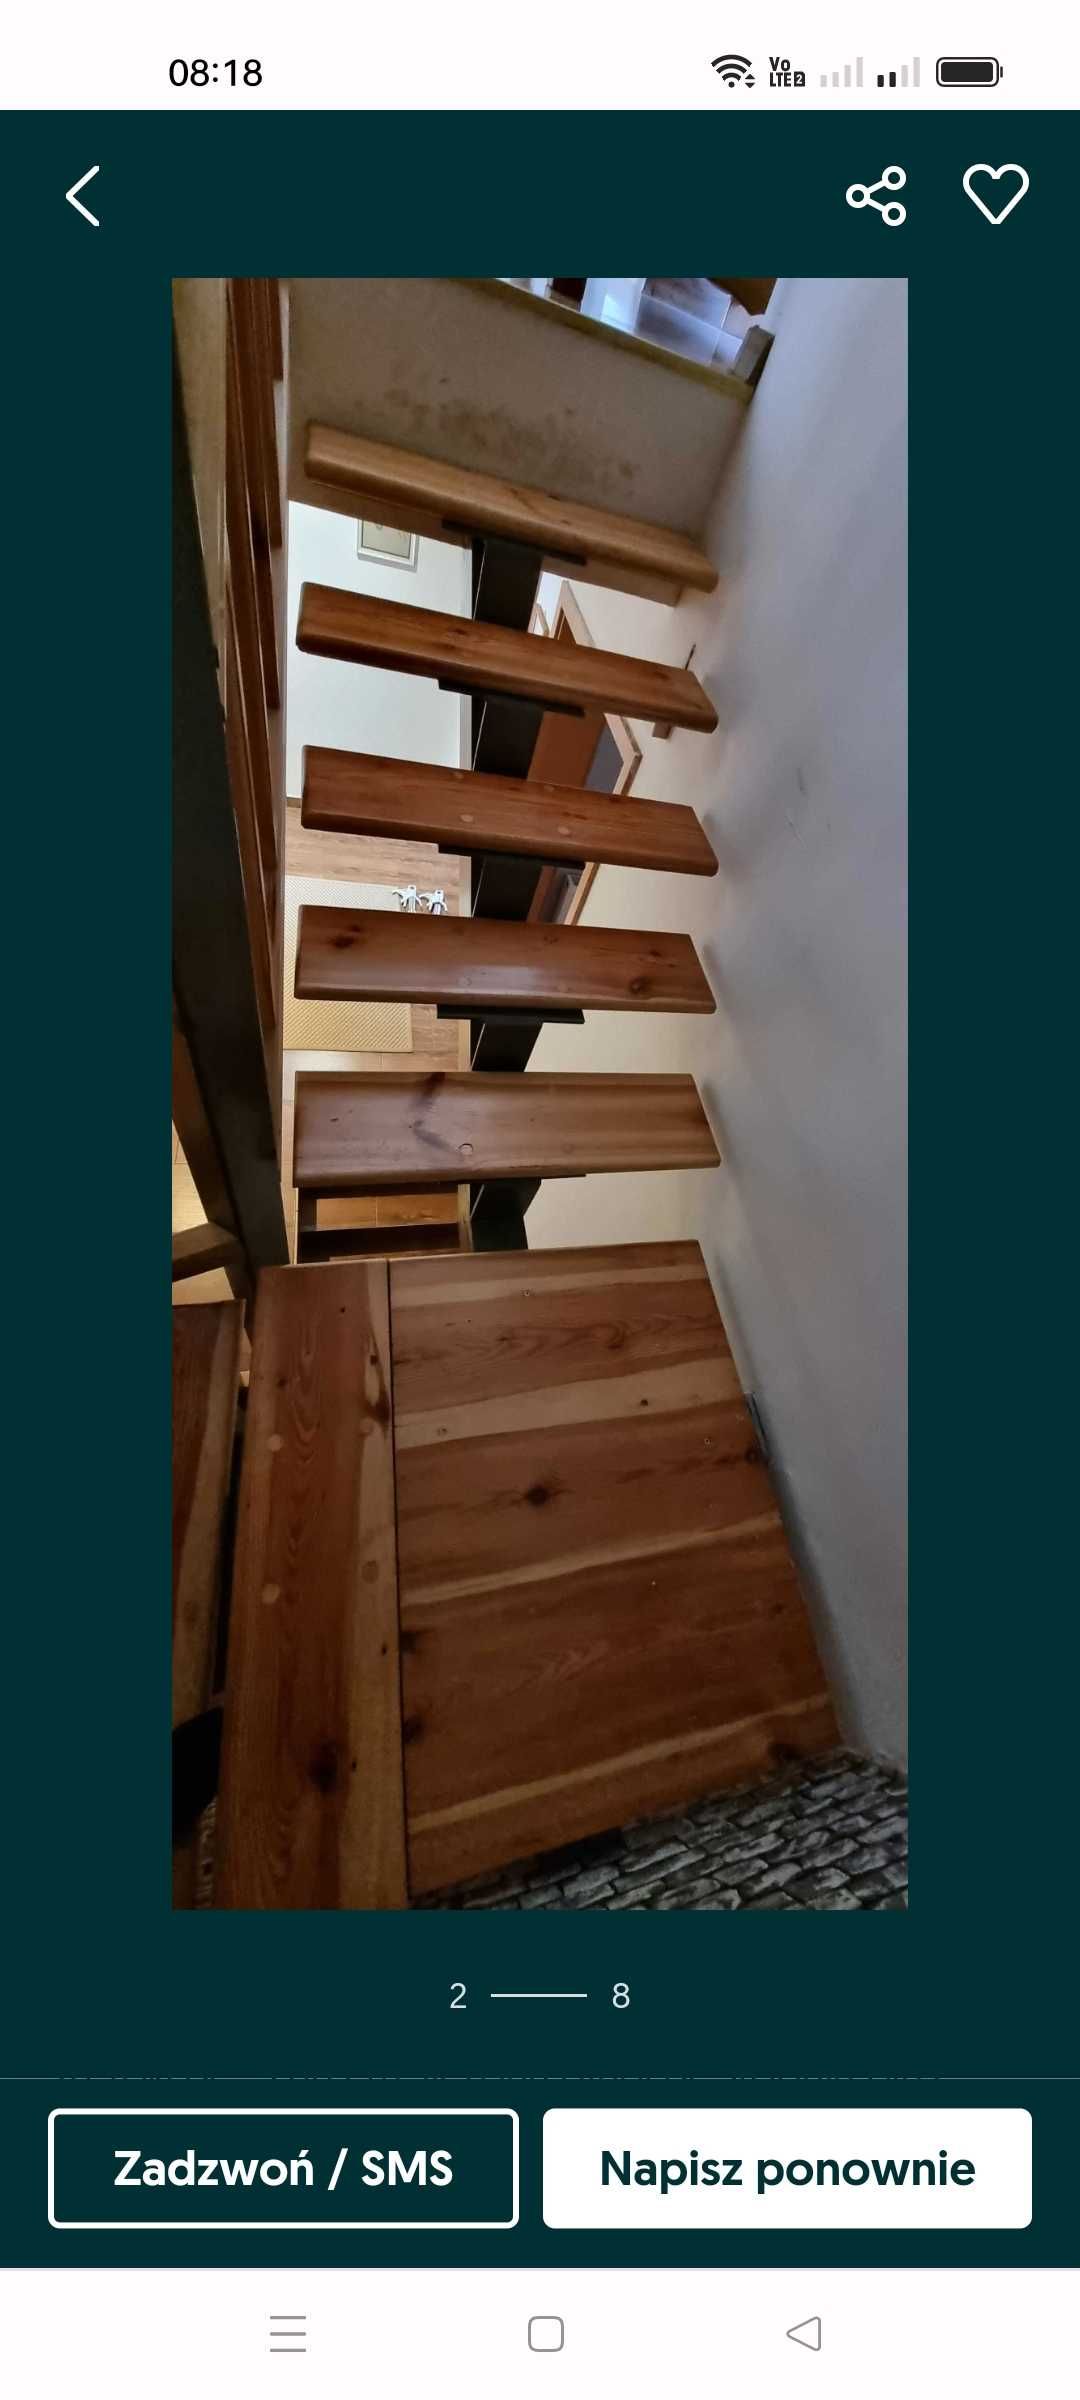 Sprzedam schody używane 29stopni z barierkami sosna bez stelaża lub za